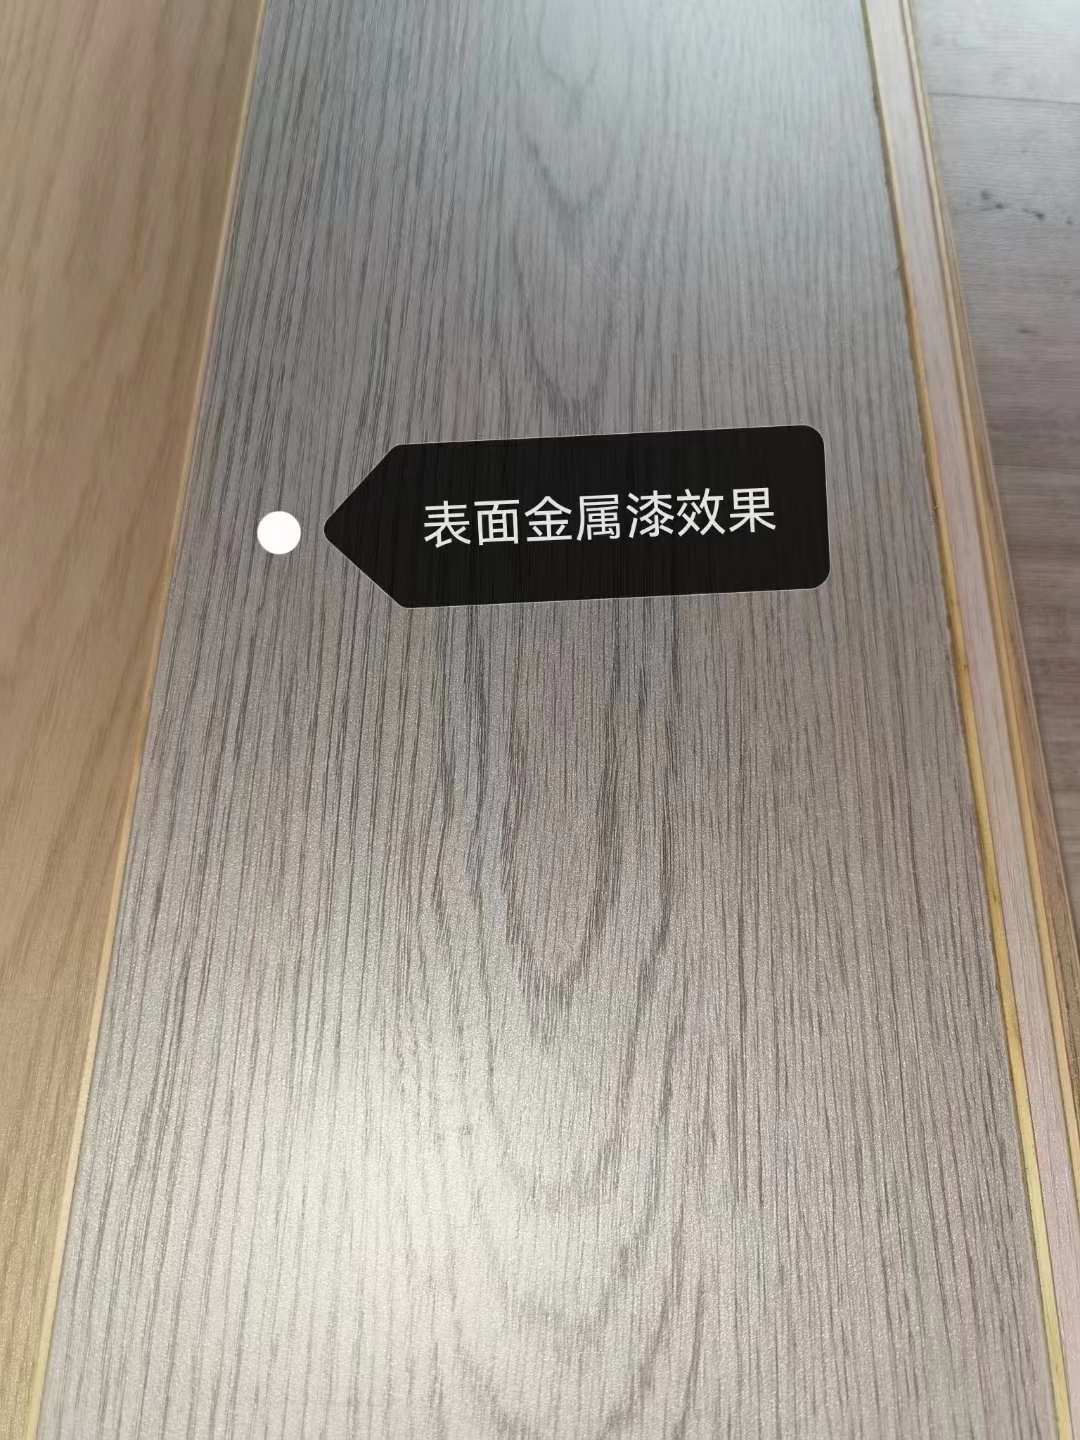 上海艾翡地板